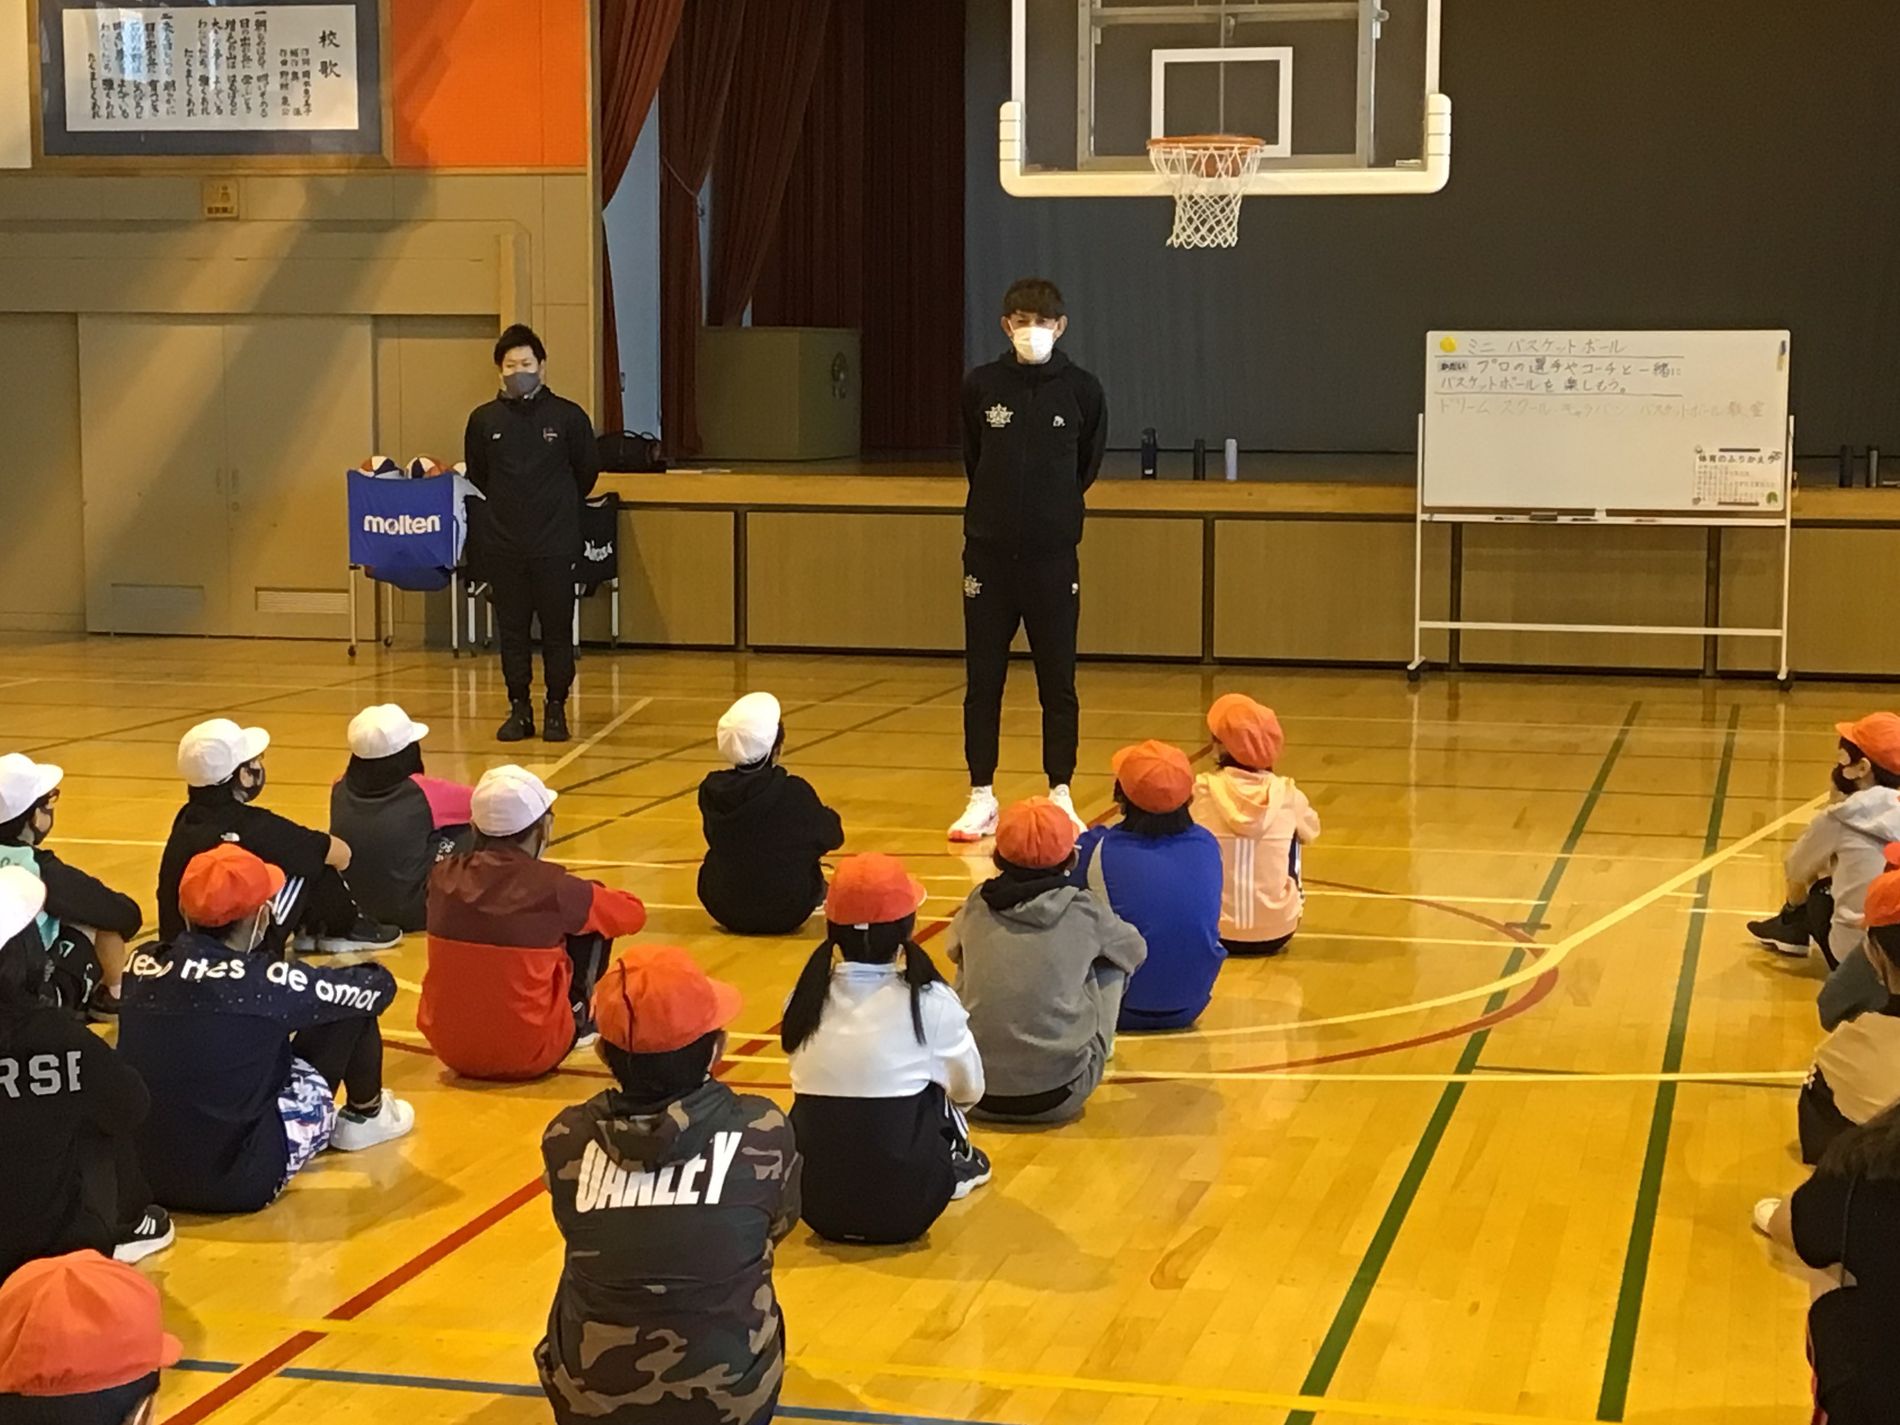 体育館に黒いジャージ姿の男性が立ち、向かい合うようにして、白やオレンジの帽子をかぶった子どもたちが床に座っている様子の写真